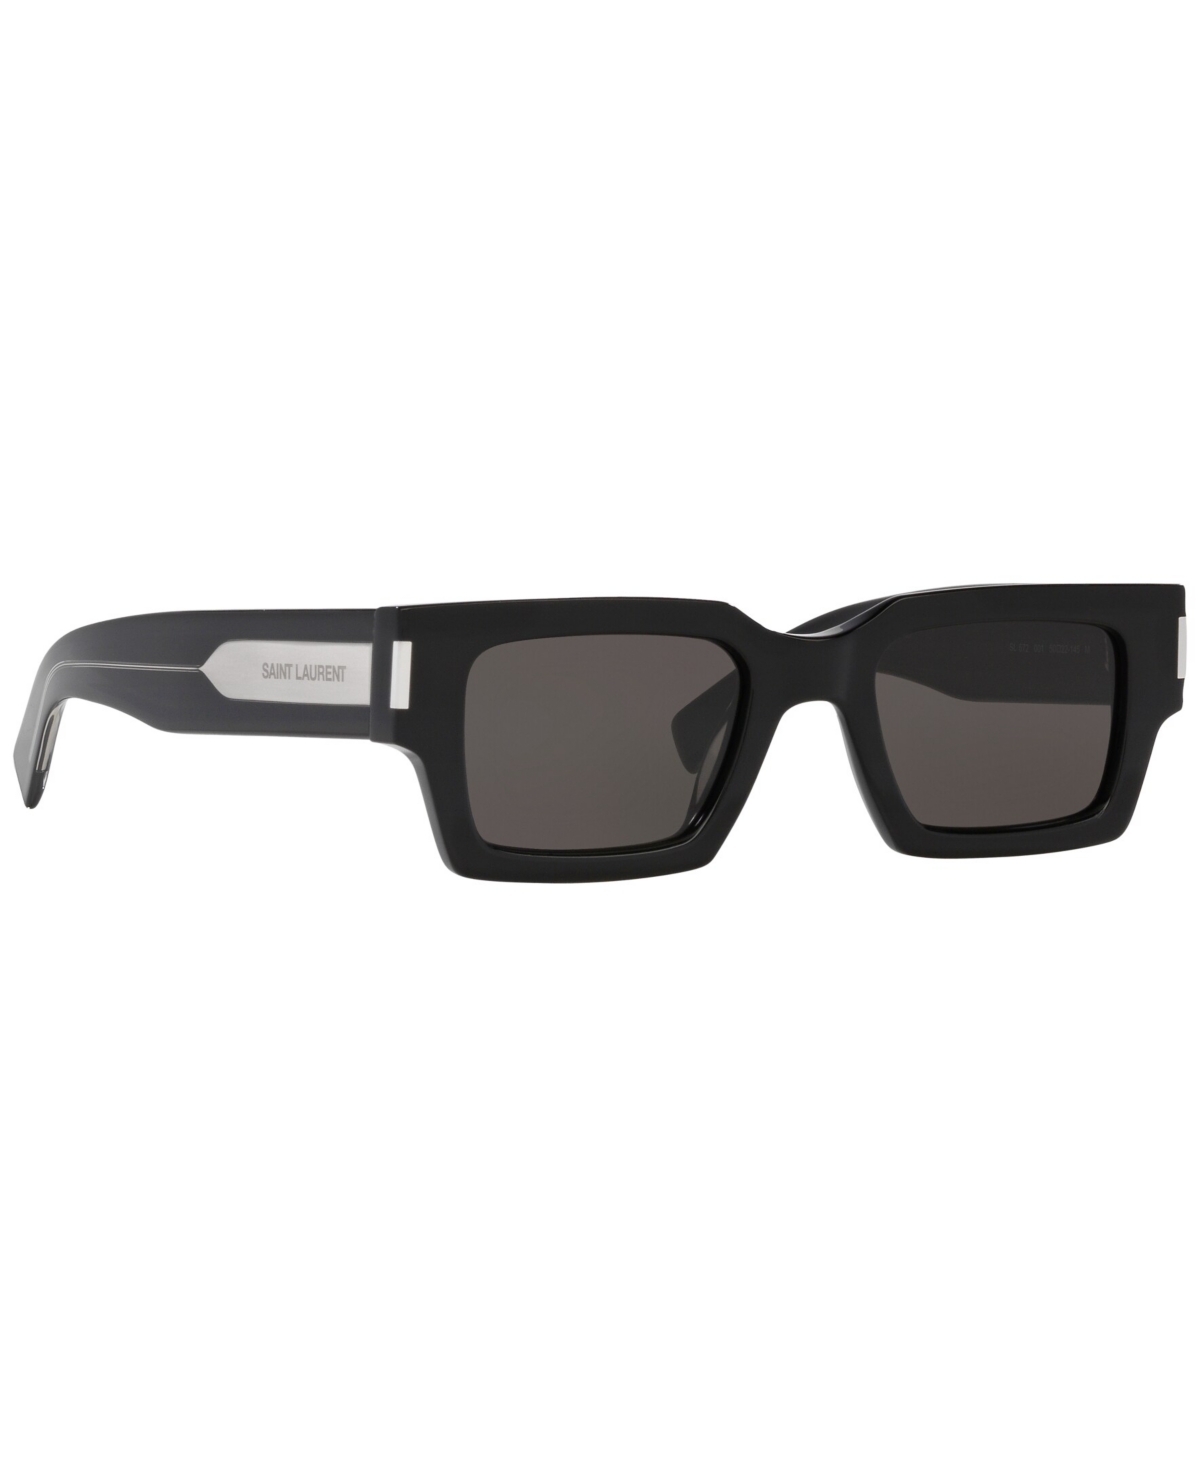 Saint Laurent Unisex Sunglasses, Sl 572 In Black